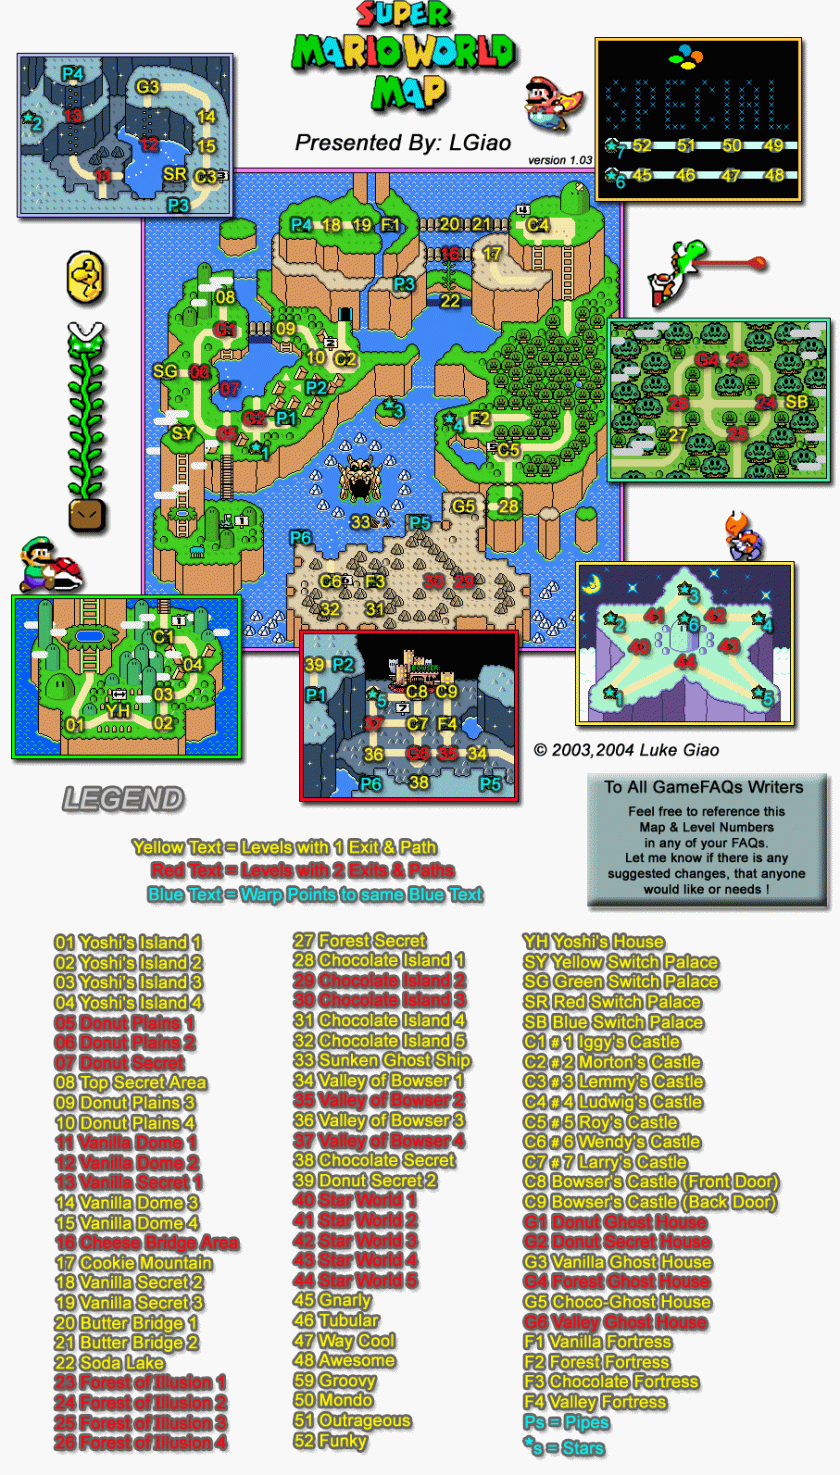 TOP 15 Jogos do Mario 